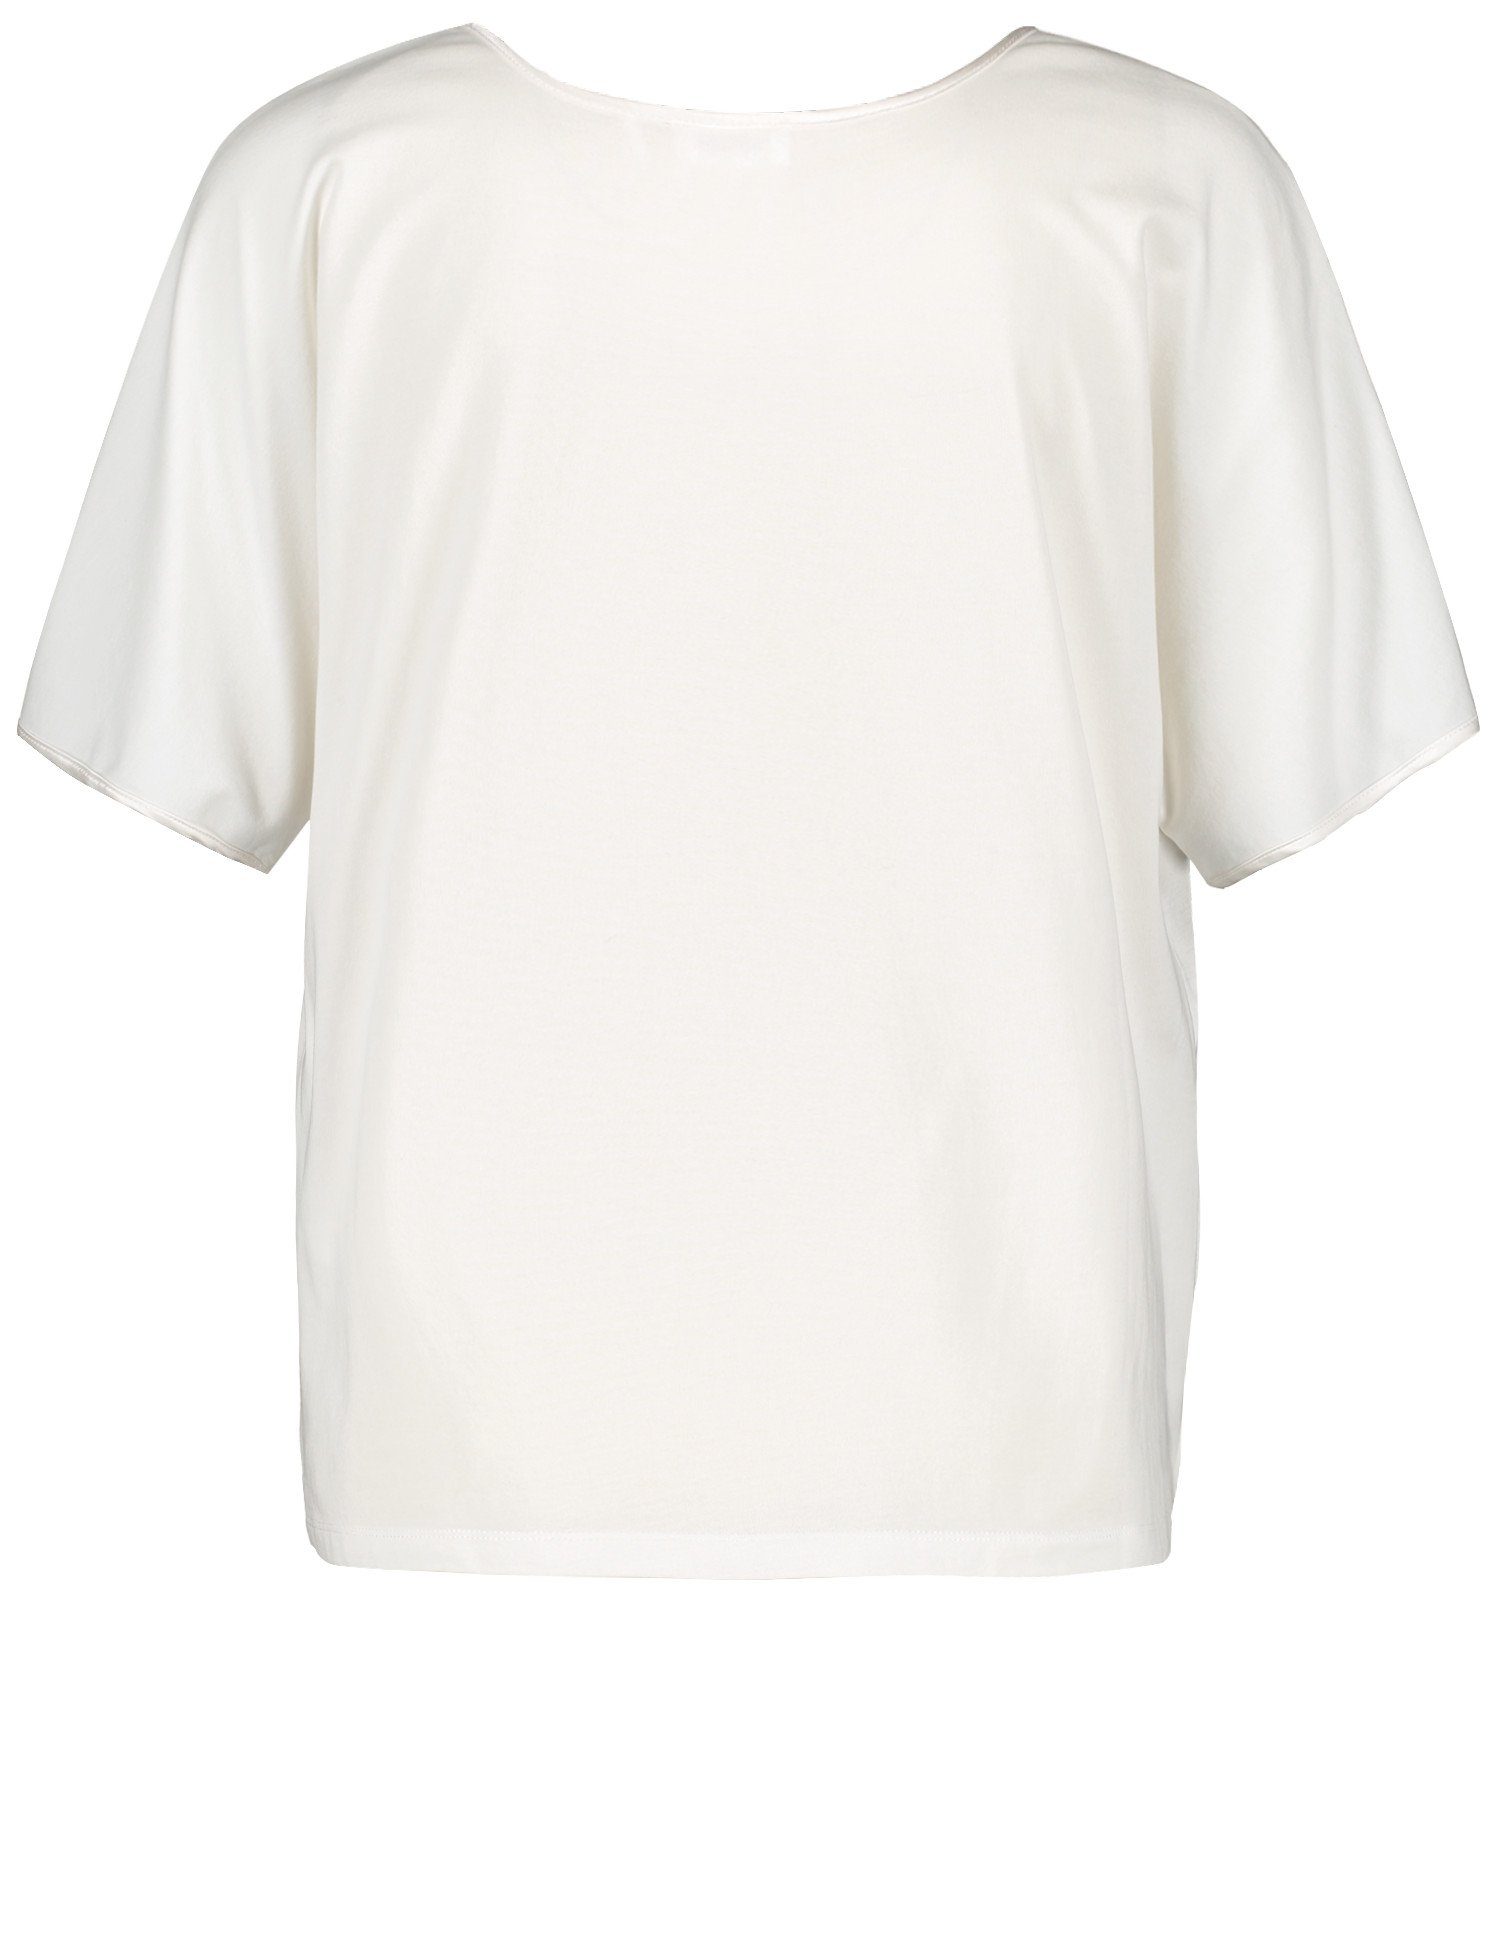 Kurzarmshirt Blusenshirt WEBER Off-white gelegter Ausschnitt mit Falte GERRY am